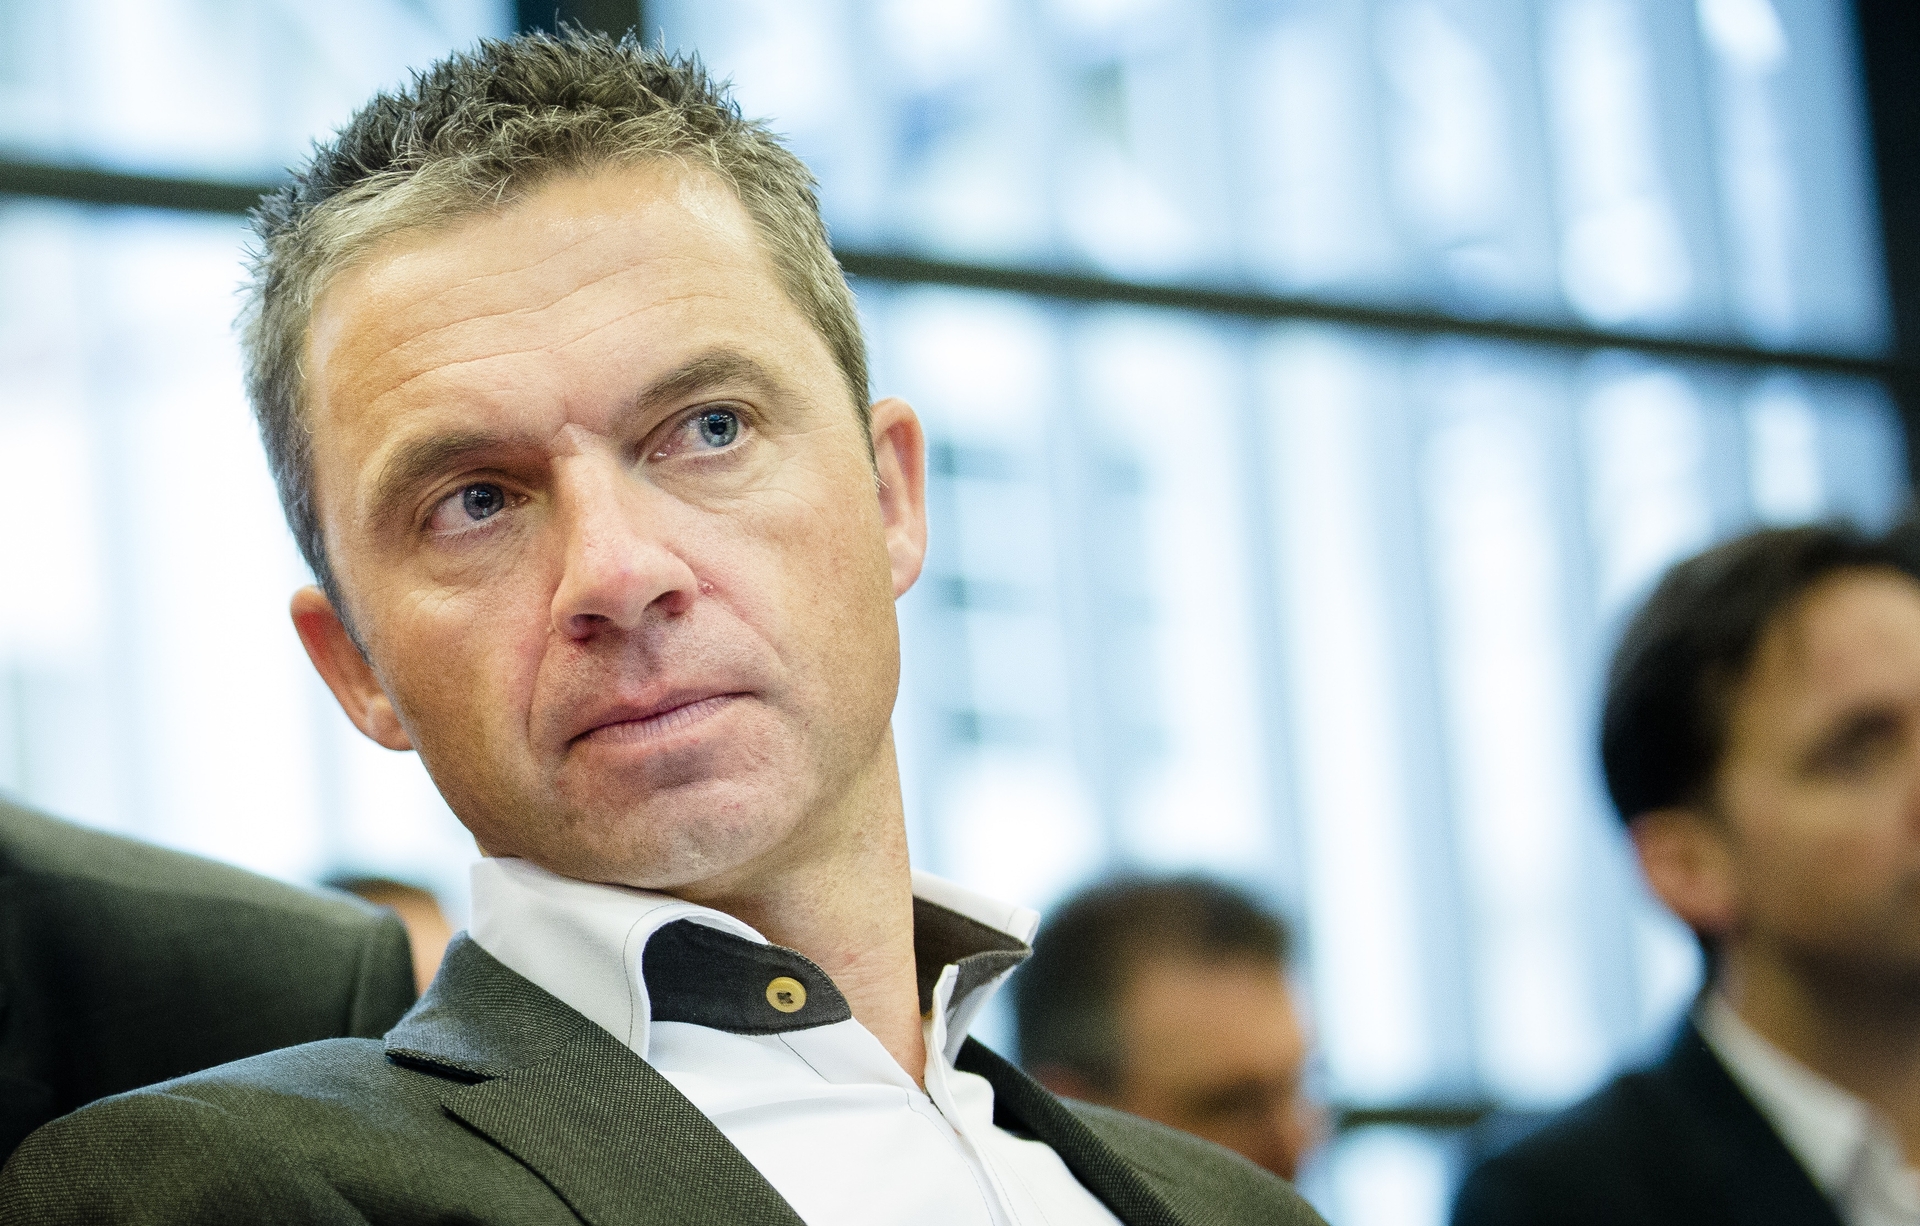 L'amministrazione NOS ha rimosso le dure parole dal rapporto finale della Commissione Van Rijn-Joop